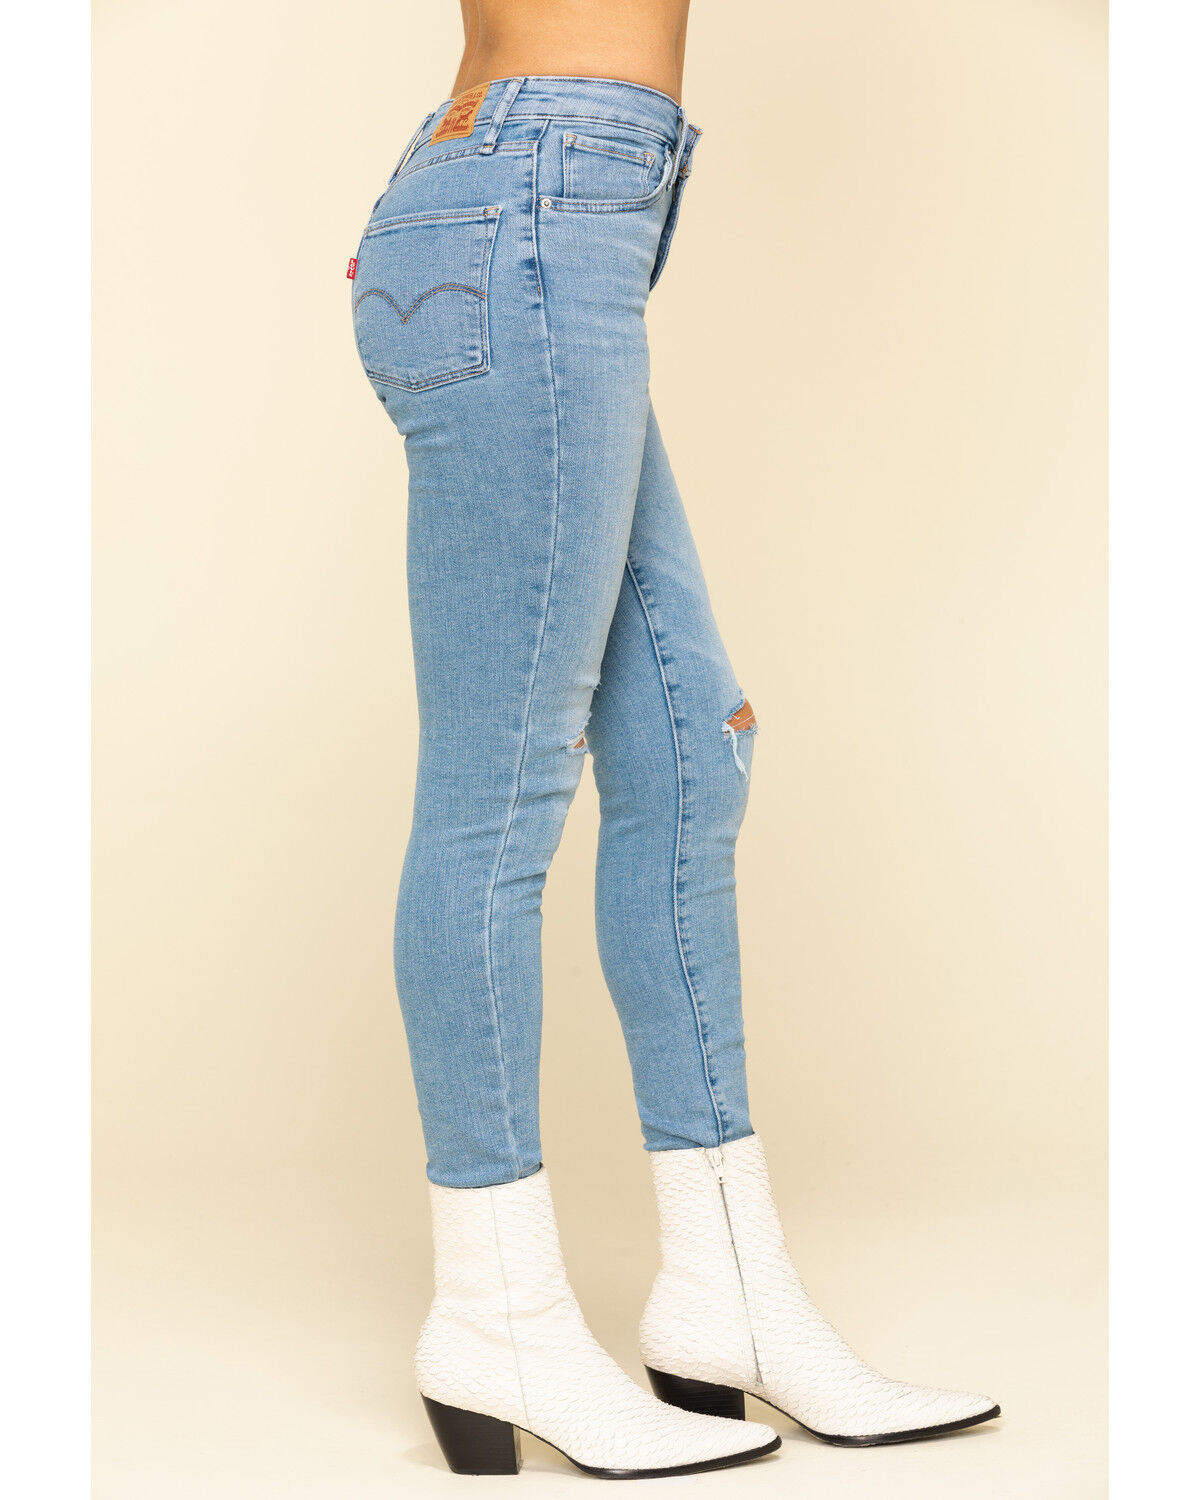 levis jeans women high waist